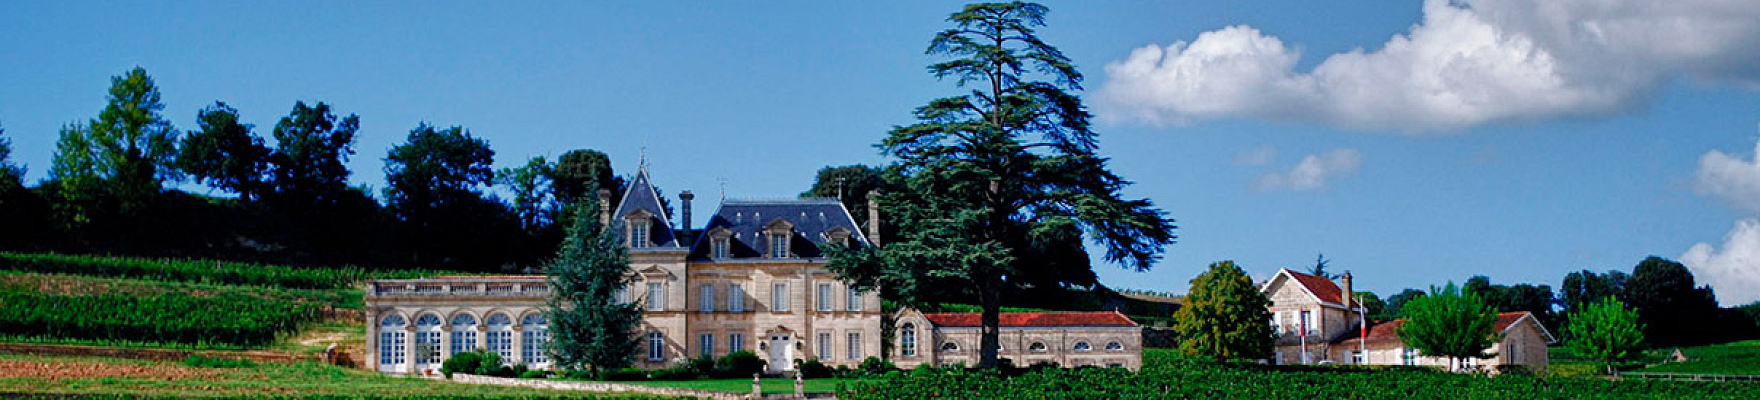 Château Fonplégade